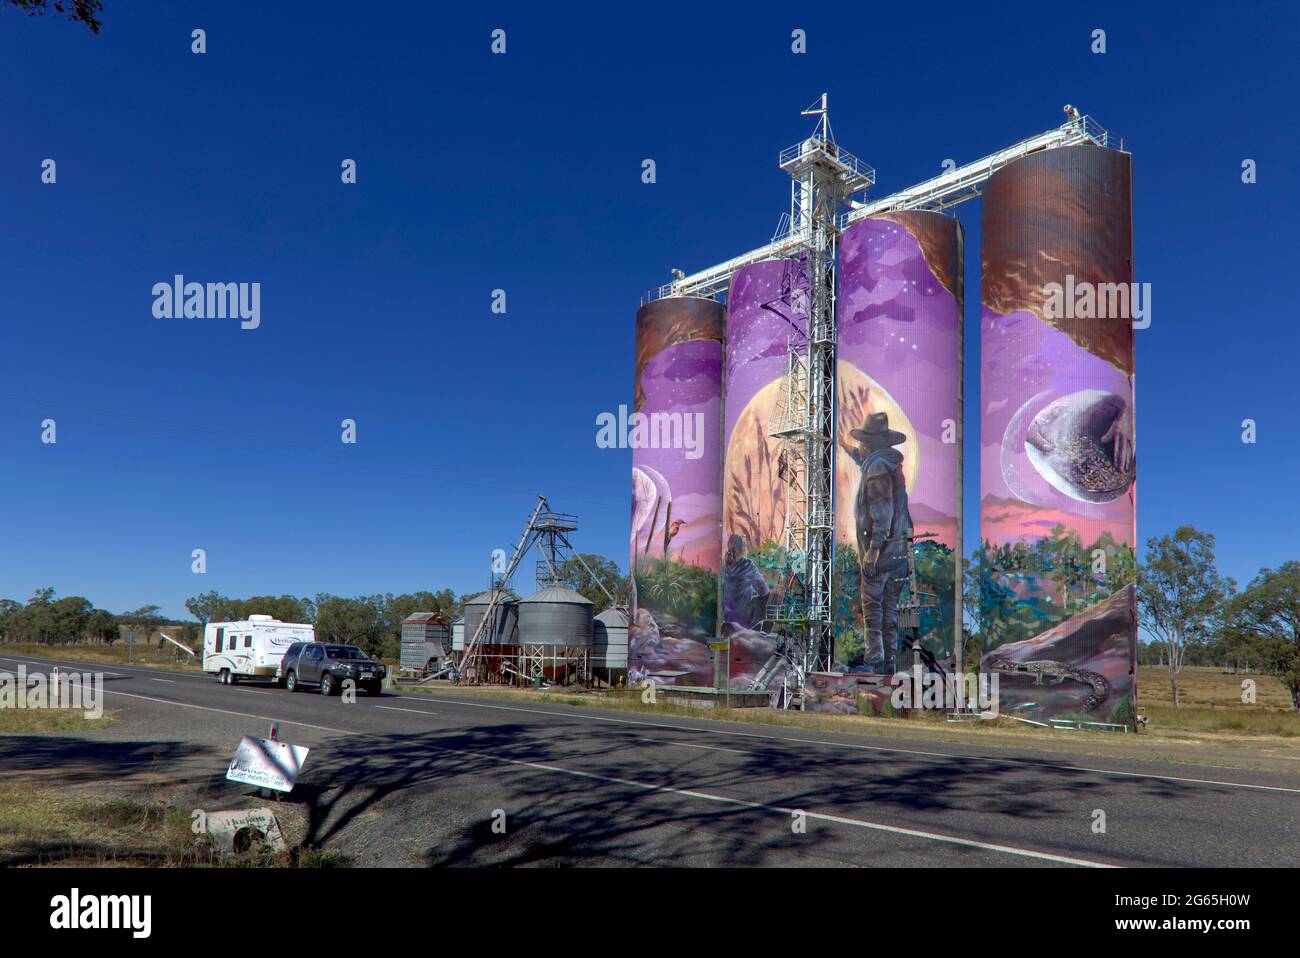 Caravane passant devant la peinture murale des trois Moons peinte sur des silos à grains près de Monto North Burnett Queensland Australie Banque D'Images